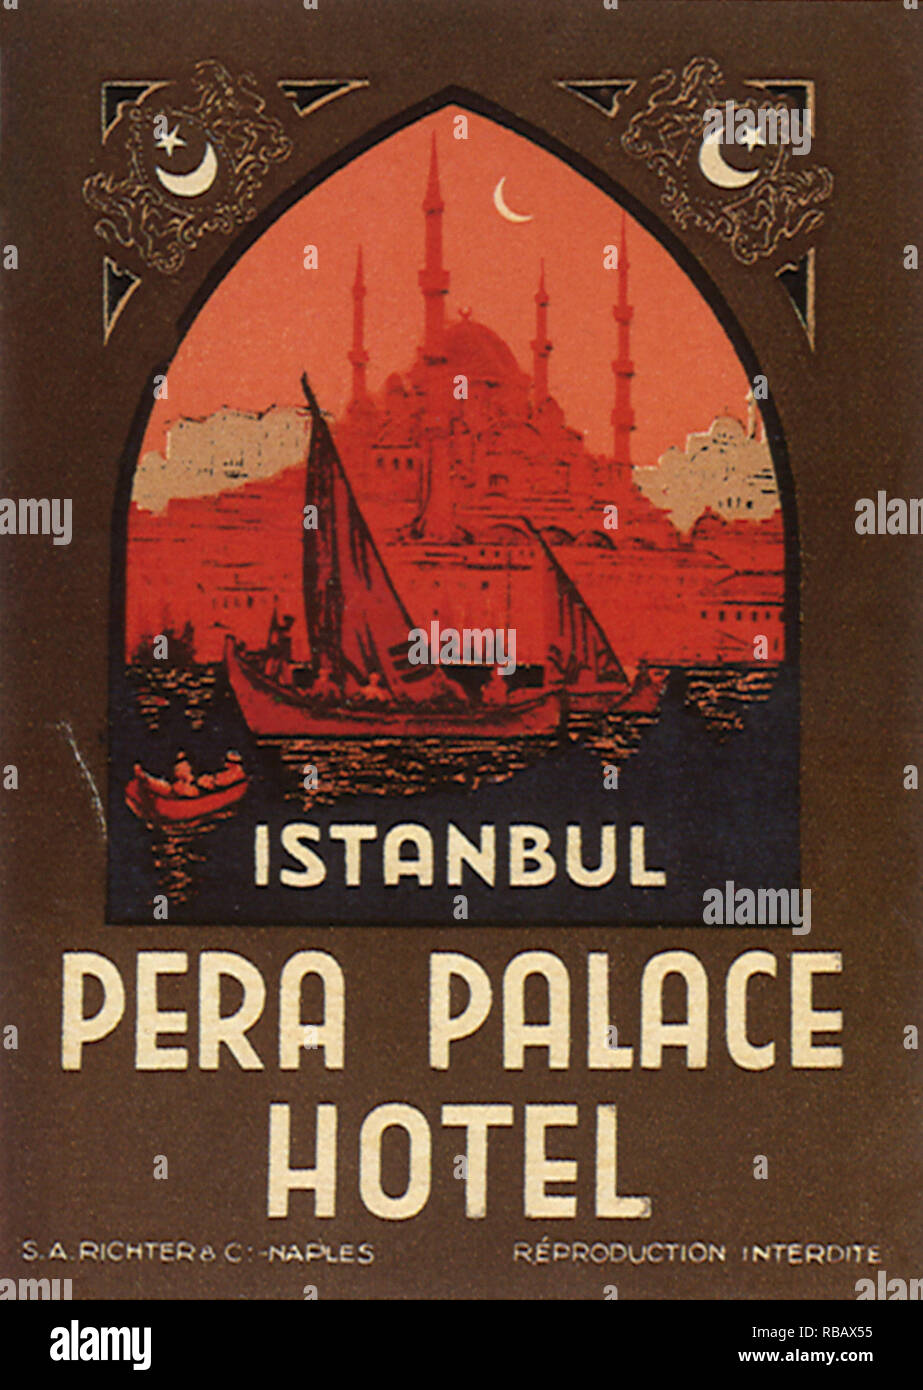 Pera Palace Hotel. Stock Photo